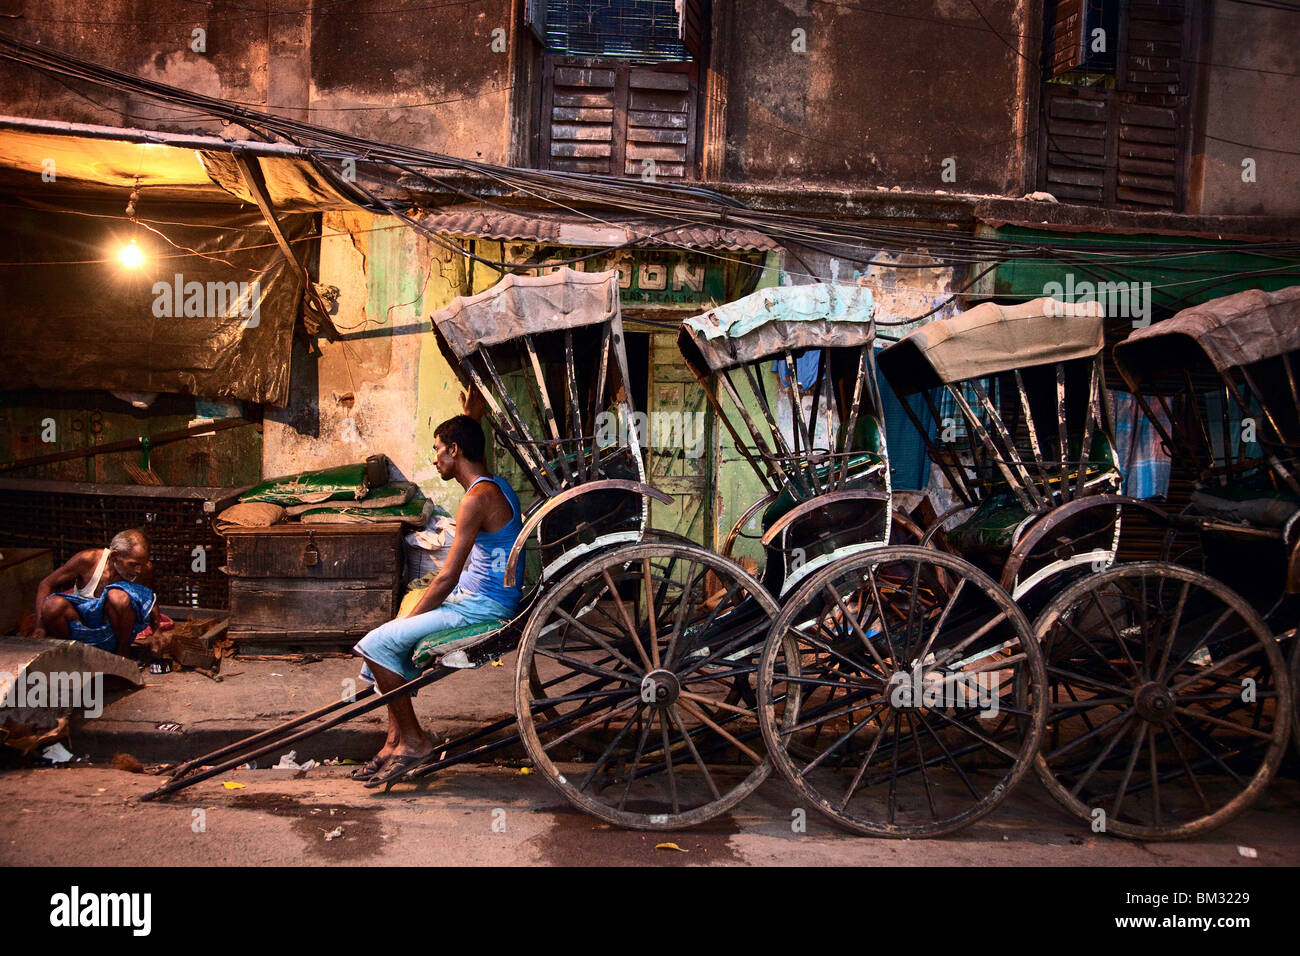 Rickshaw Kolkata Stock Illustrations – 21 Rickshaw Kolkata Stock  Illustrations, Vectors & Clipart - Dreamstime